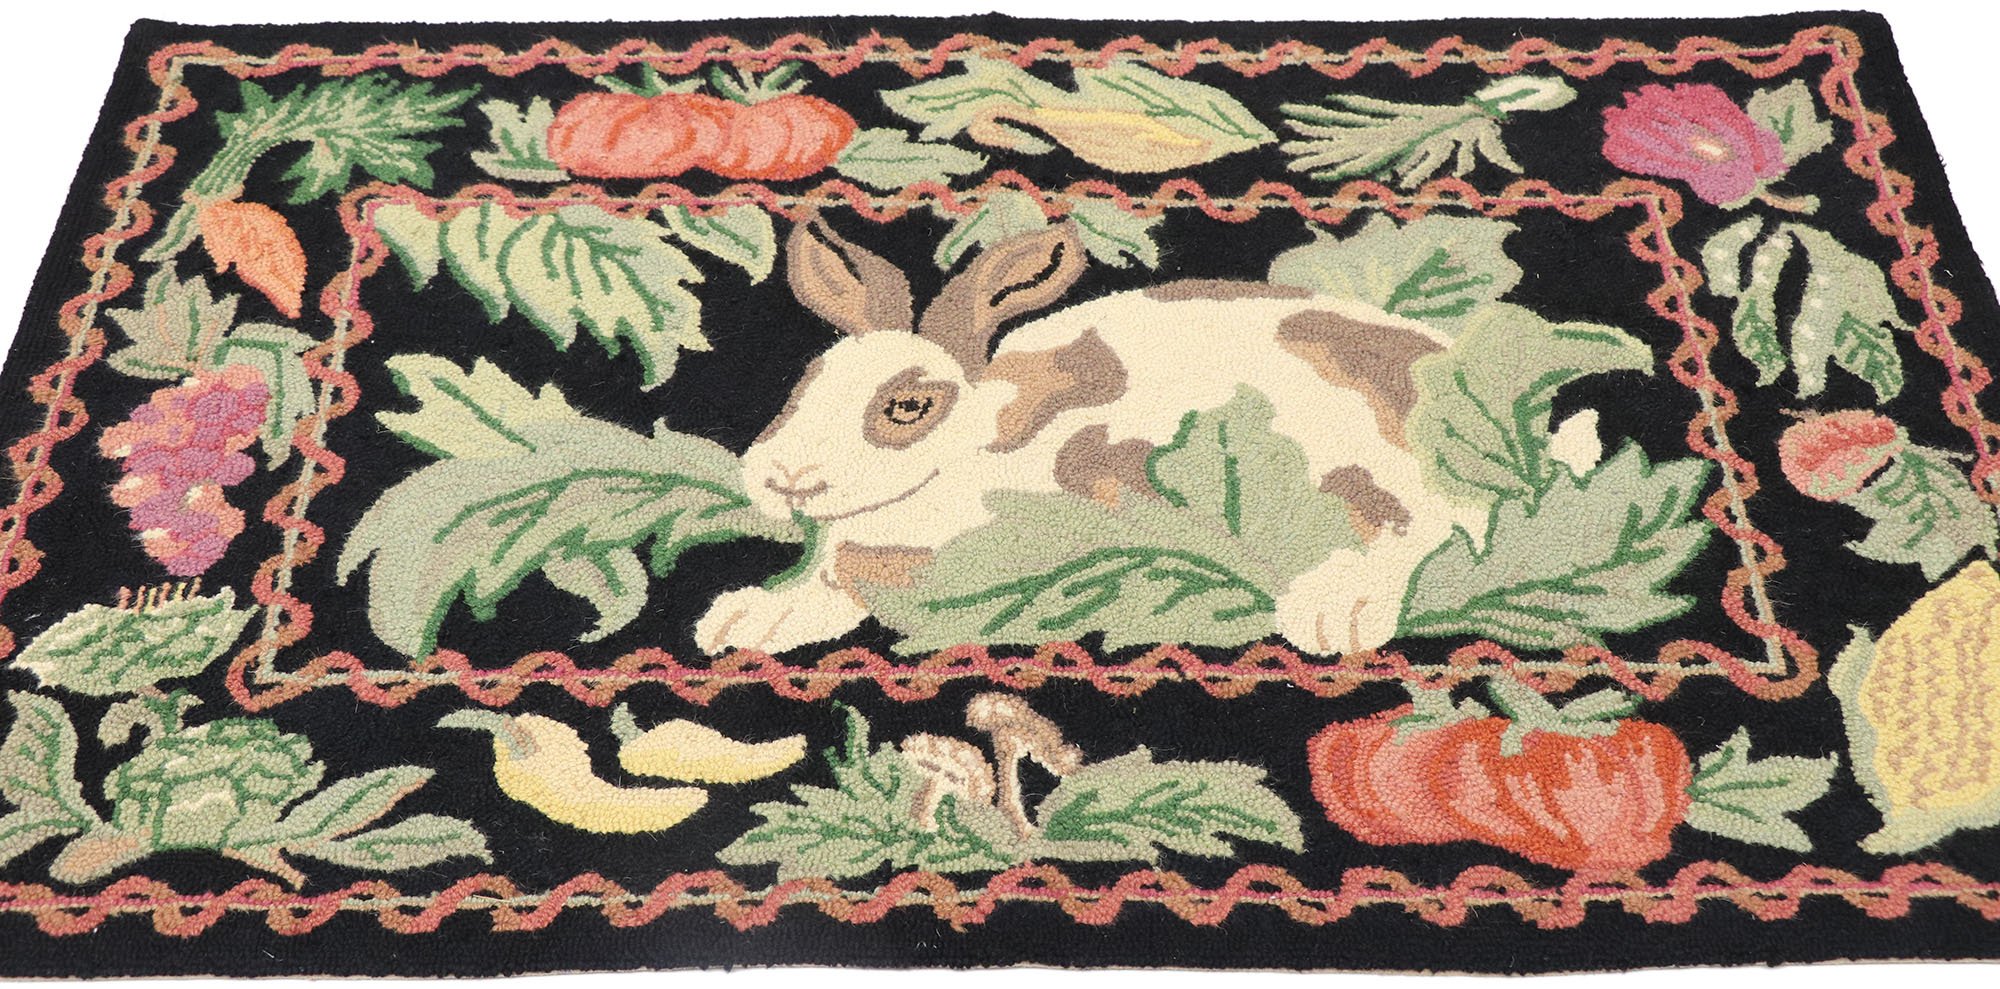 2 x 4 Vintage Garden Rabbit Hooked Rug 77854